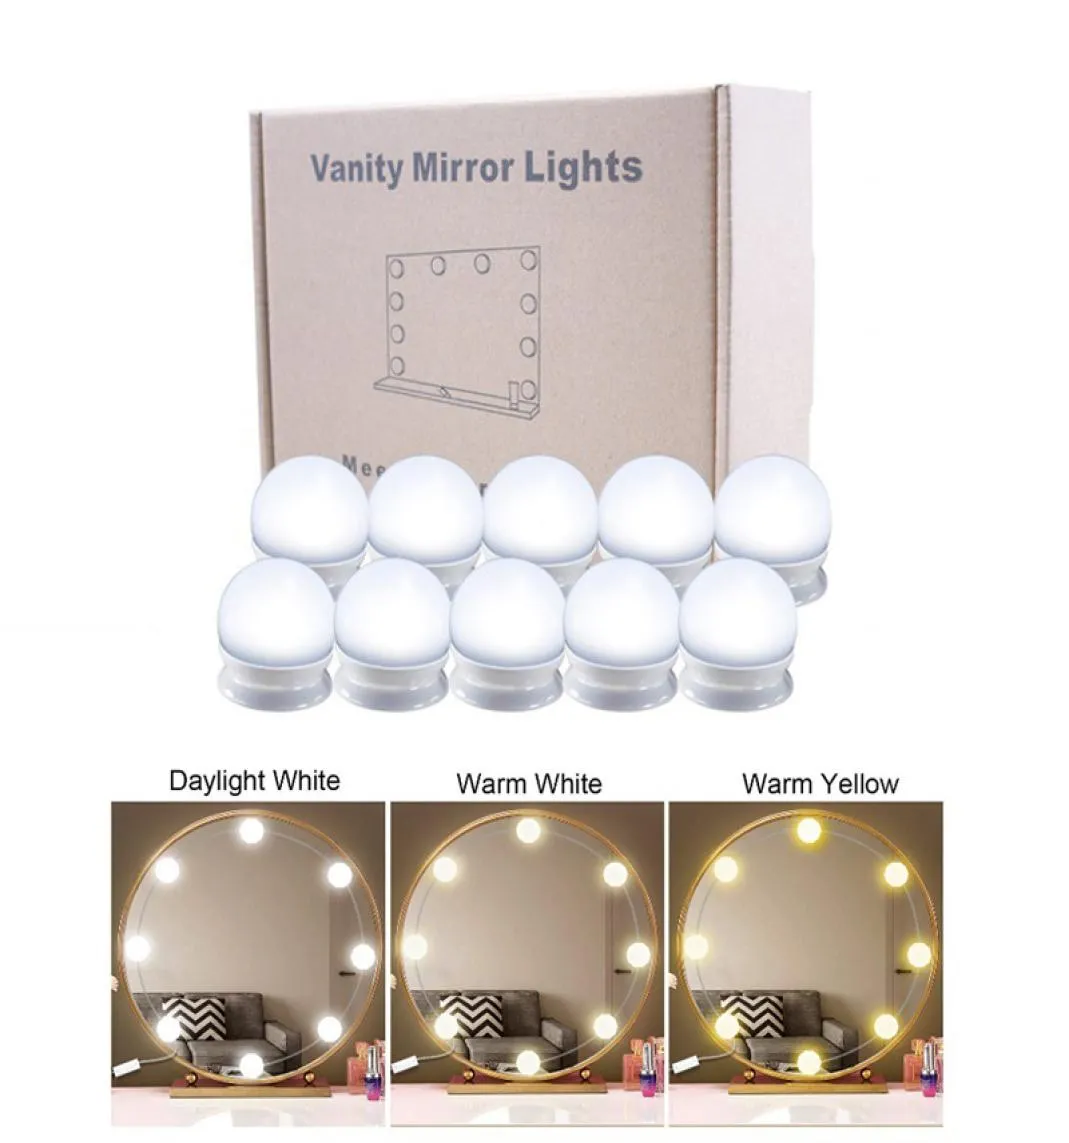 Kit d'ampoules à 10 LED de haute qualité pour miroir 3 tons de couleur luminosité réglable luminosité